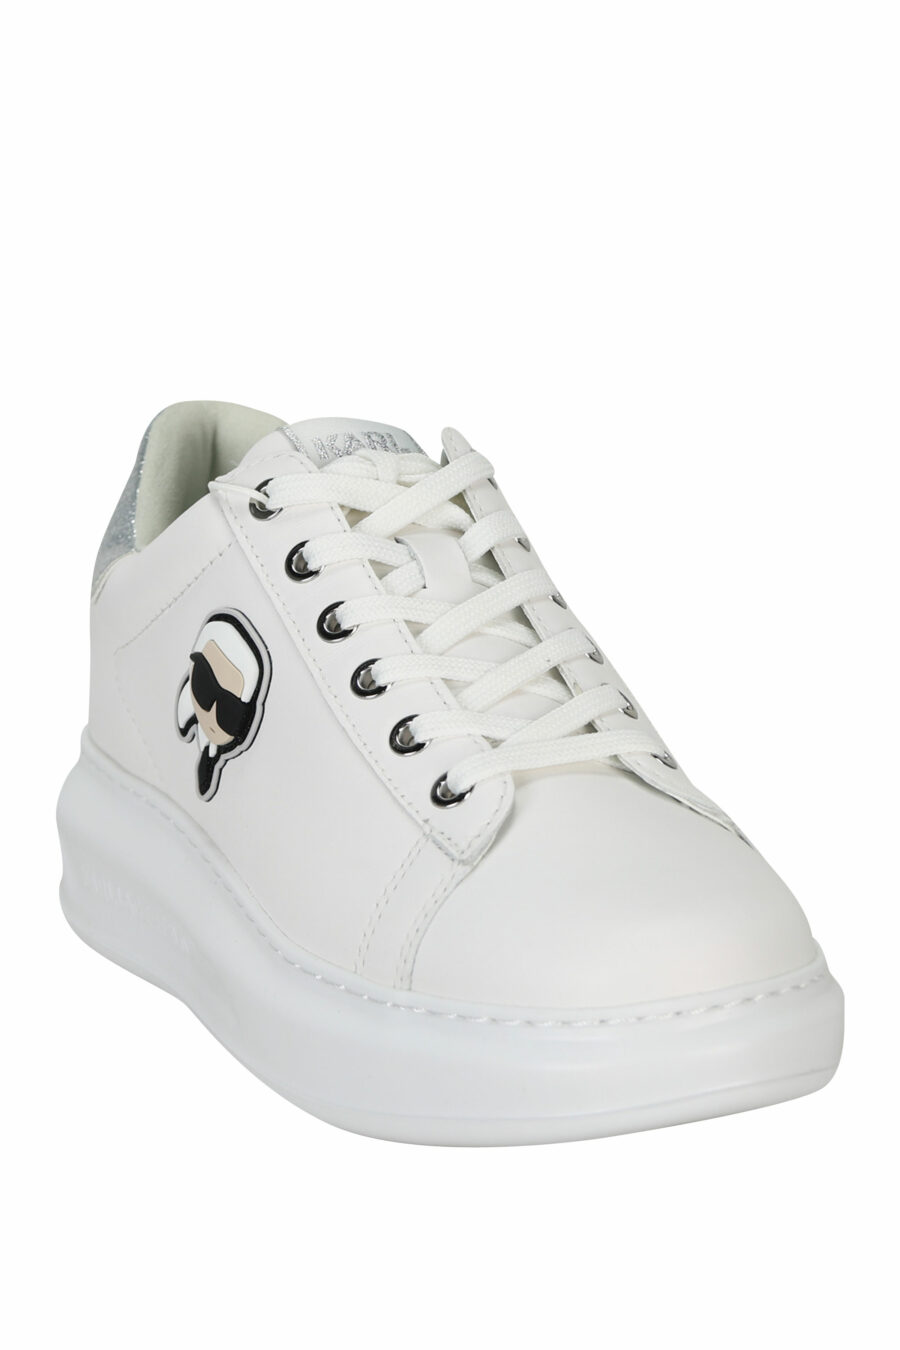 Zapatillas blancas "Kapri" con logo en goma y detalle plateado brillante - 5059529351174 1